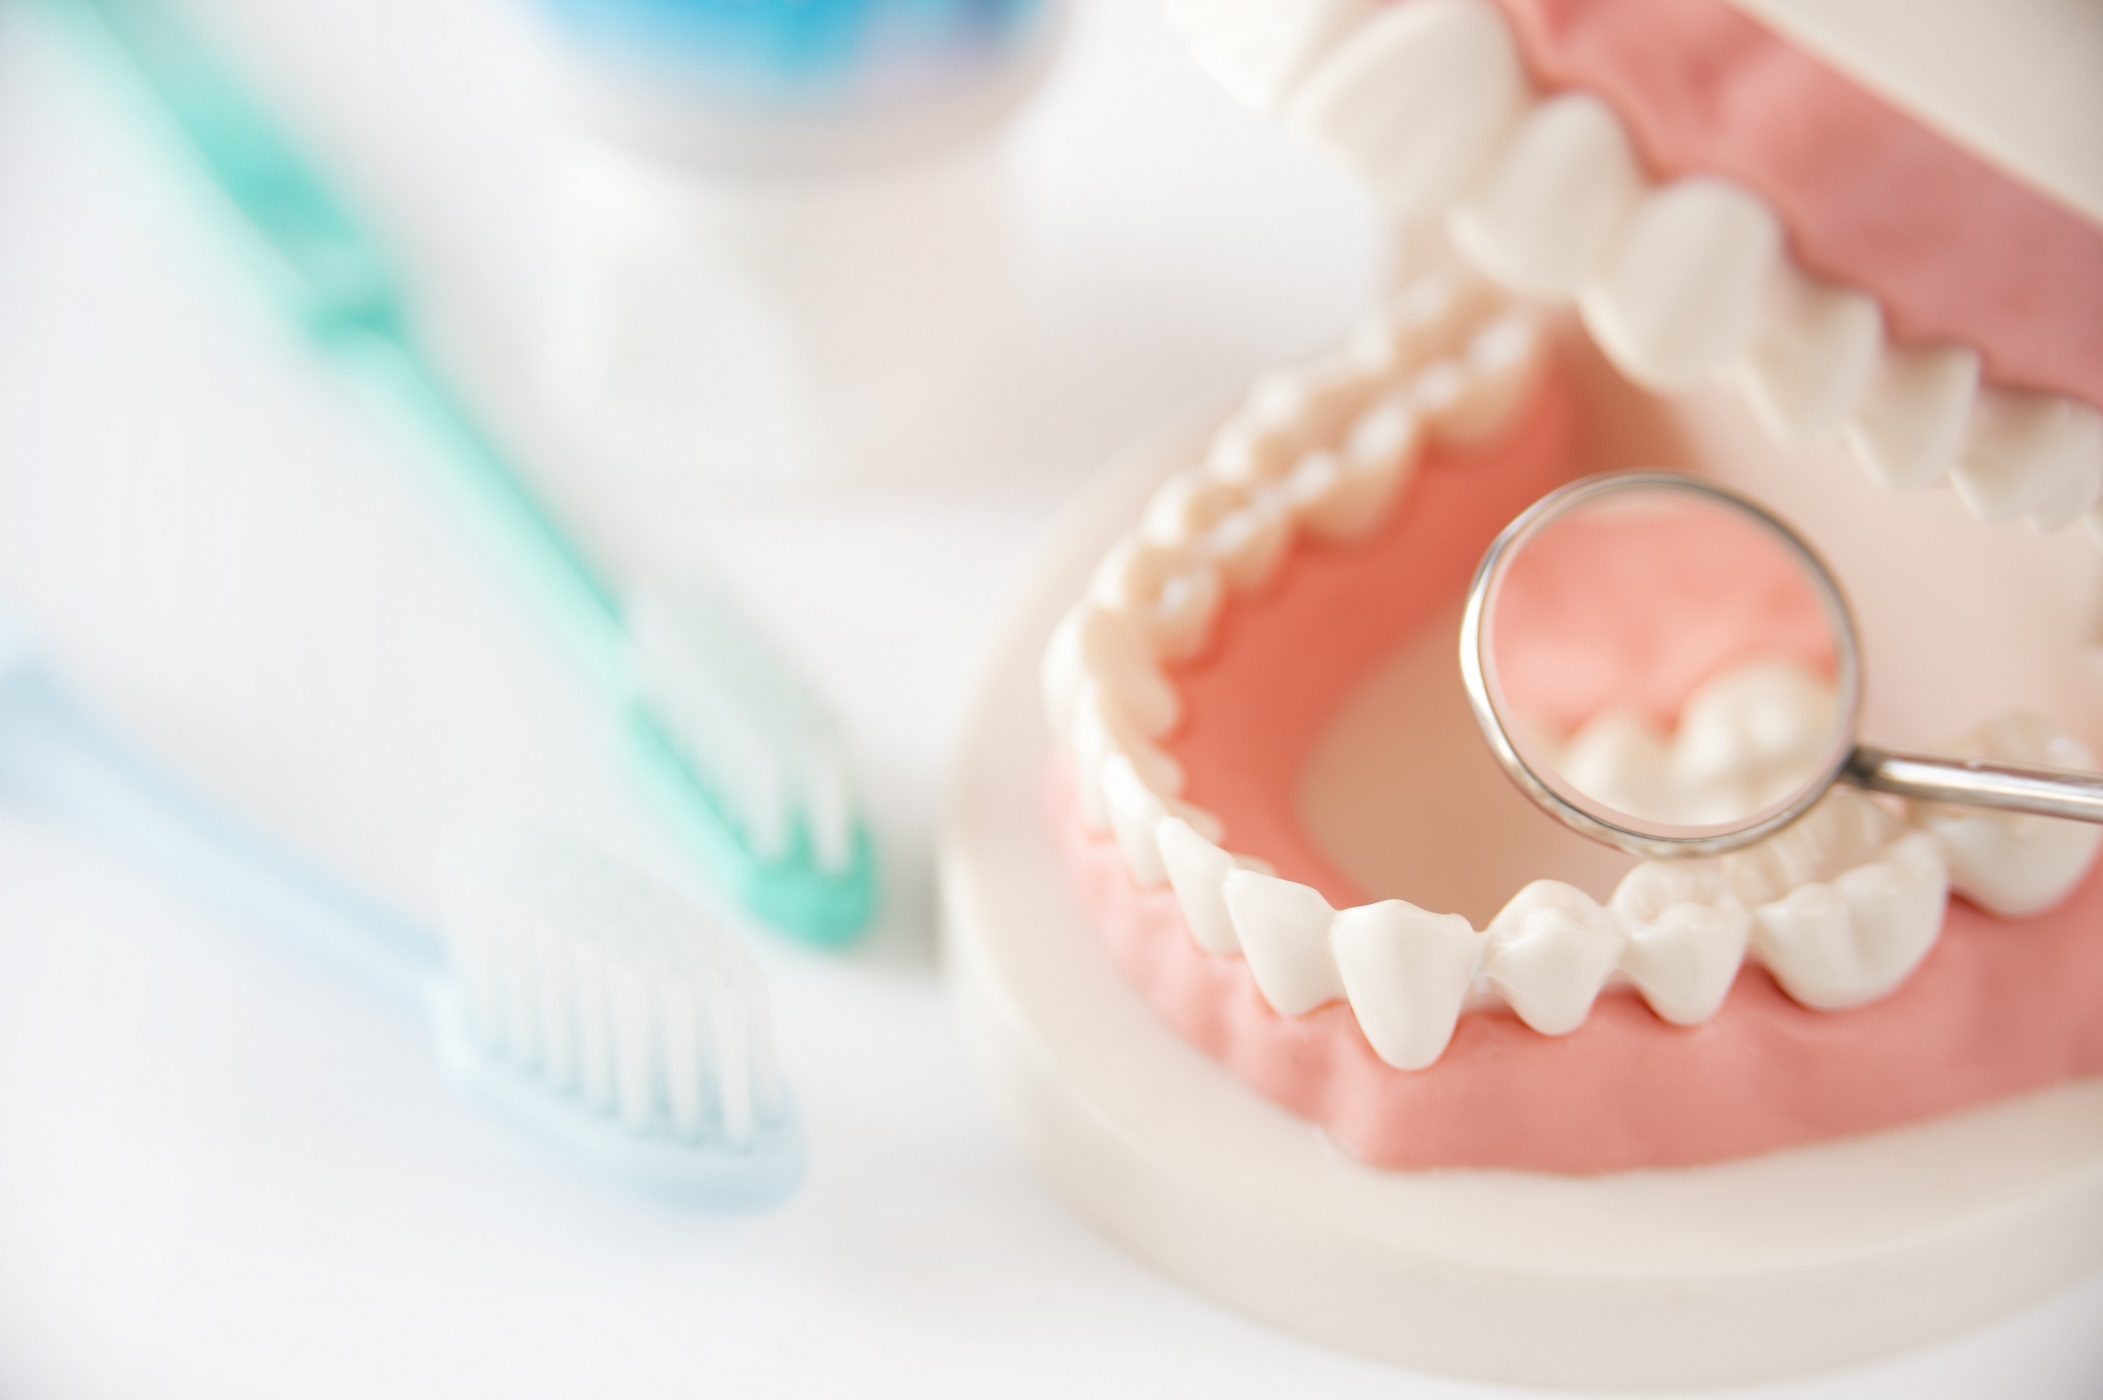 Uma imitação idêntica de um tipo de prótese dentária, é bem semelhante a arca dentária natural dos humanos. É uma imagem bem clara, e está na mesa de um cururgião-dentista.